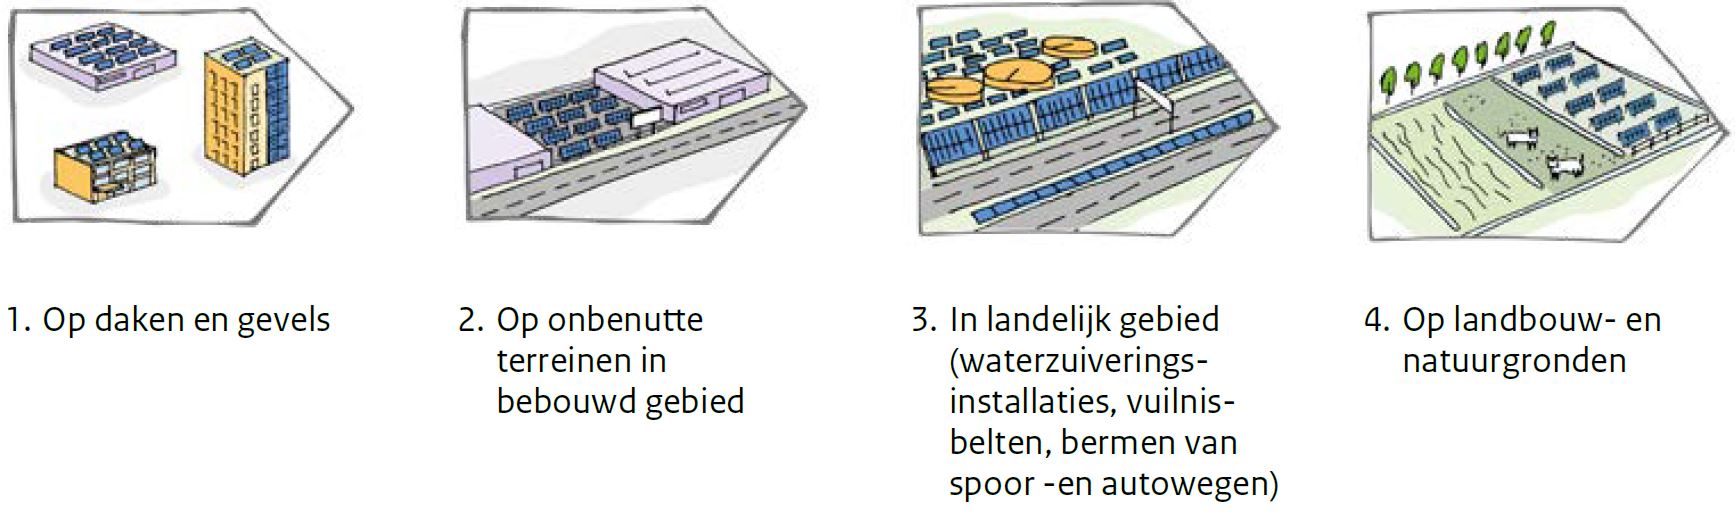 Deze afbeelding geeft de stappen vabn de zonneladder weer. stap 1 op daken en gevels, stap 2 op onbenutte terreinnen in bebouwd gebied 3. in landelijkgebied  4 op landbouw en natuurgronden